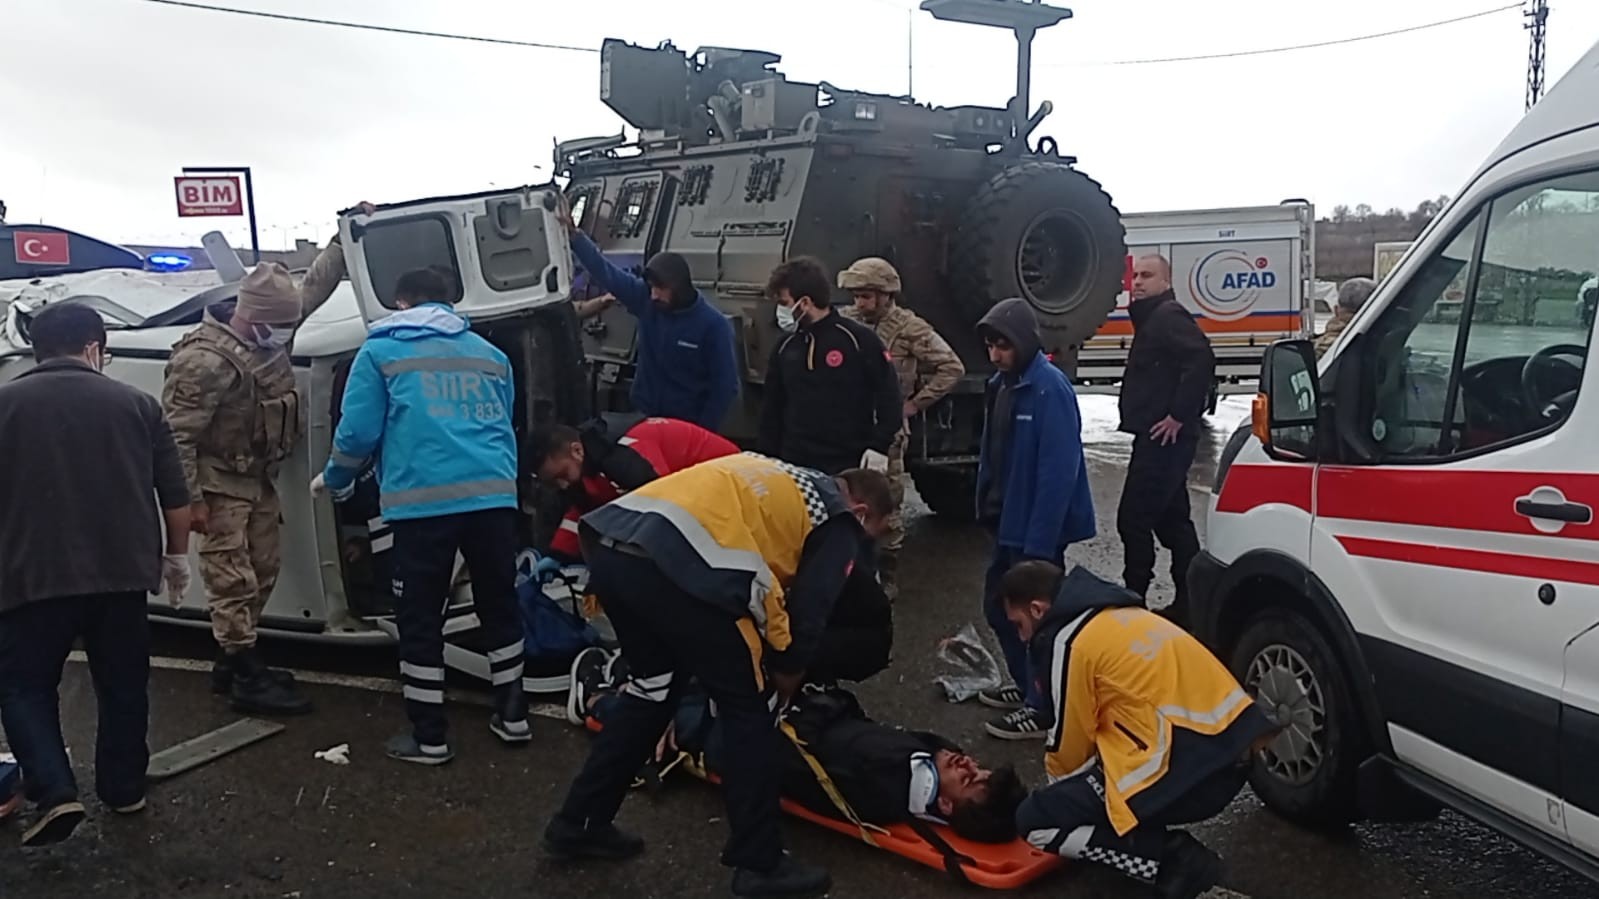 Siirt’te askeri araç ile sivil araç çarpıştı: 5 yaralı #siirt